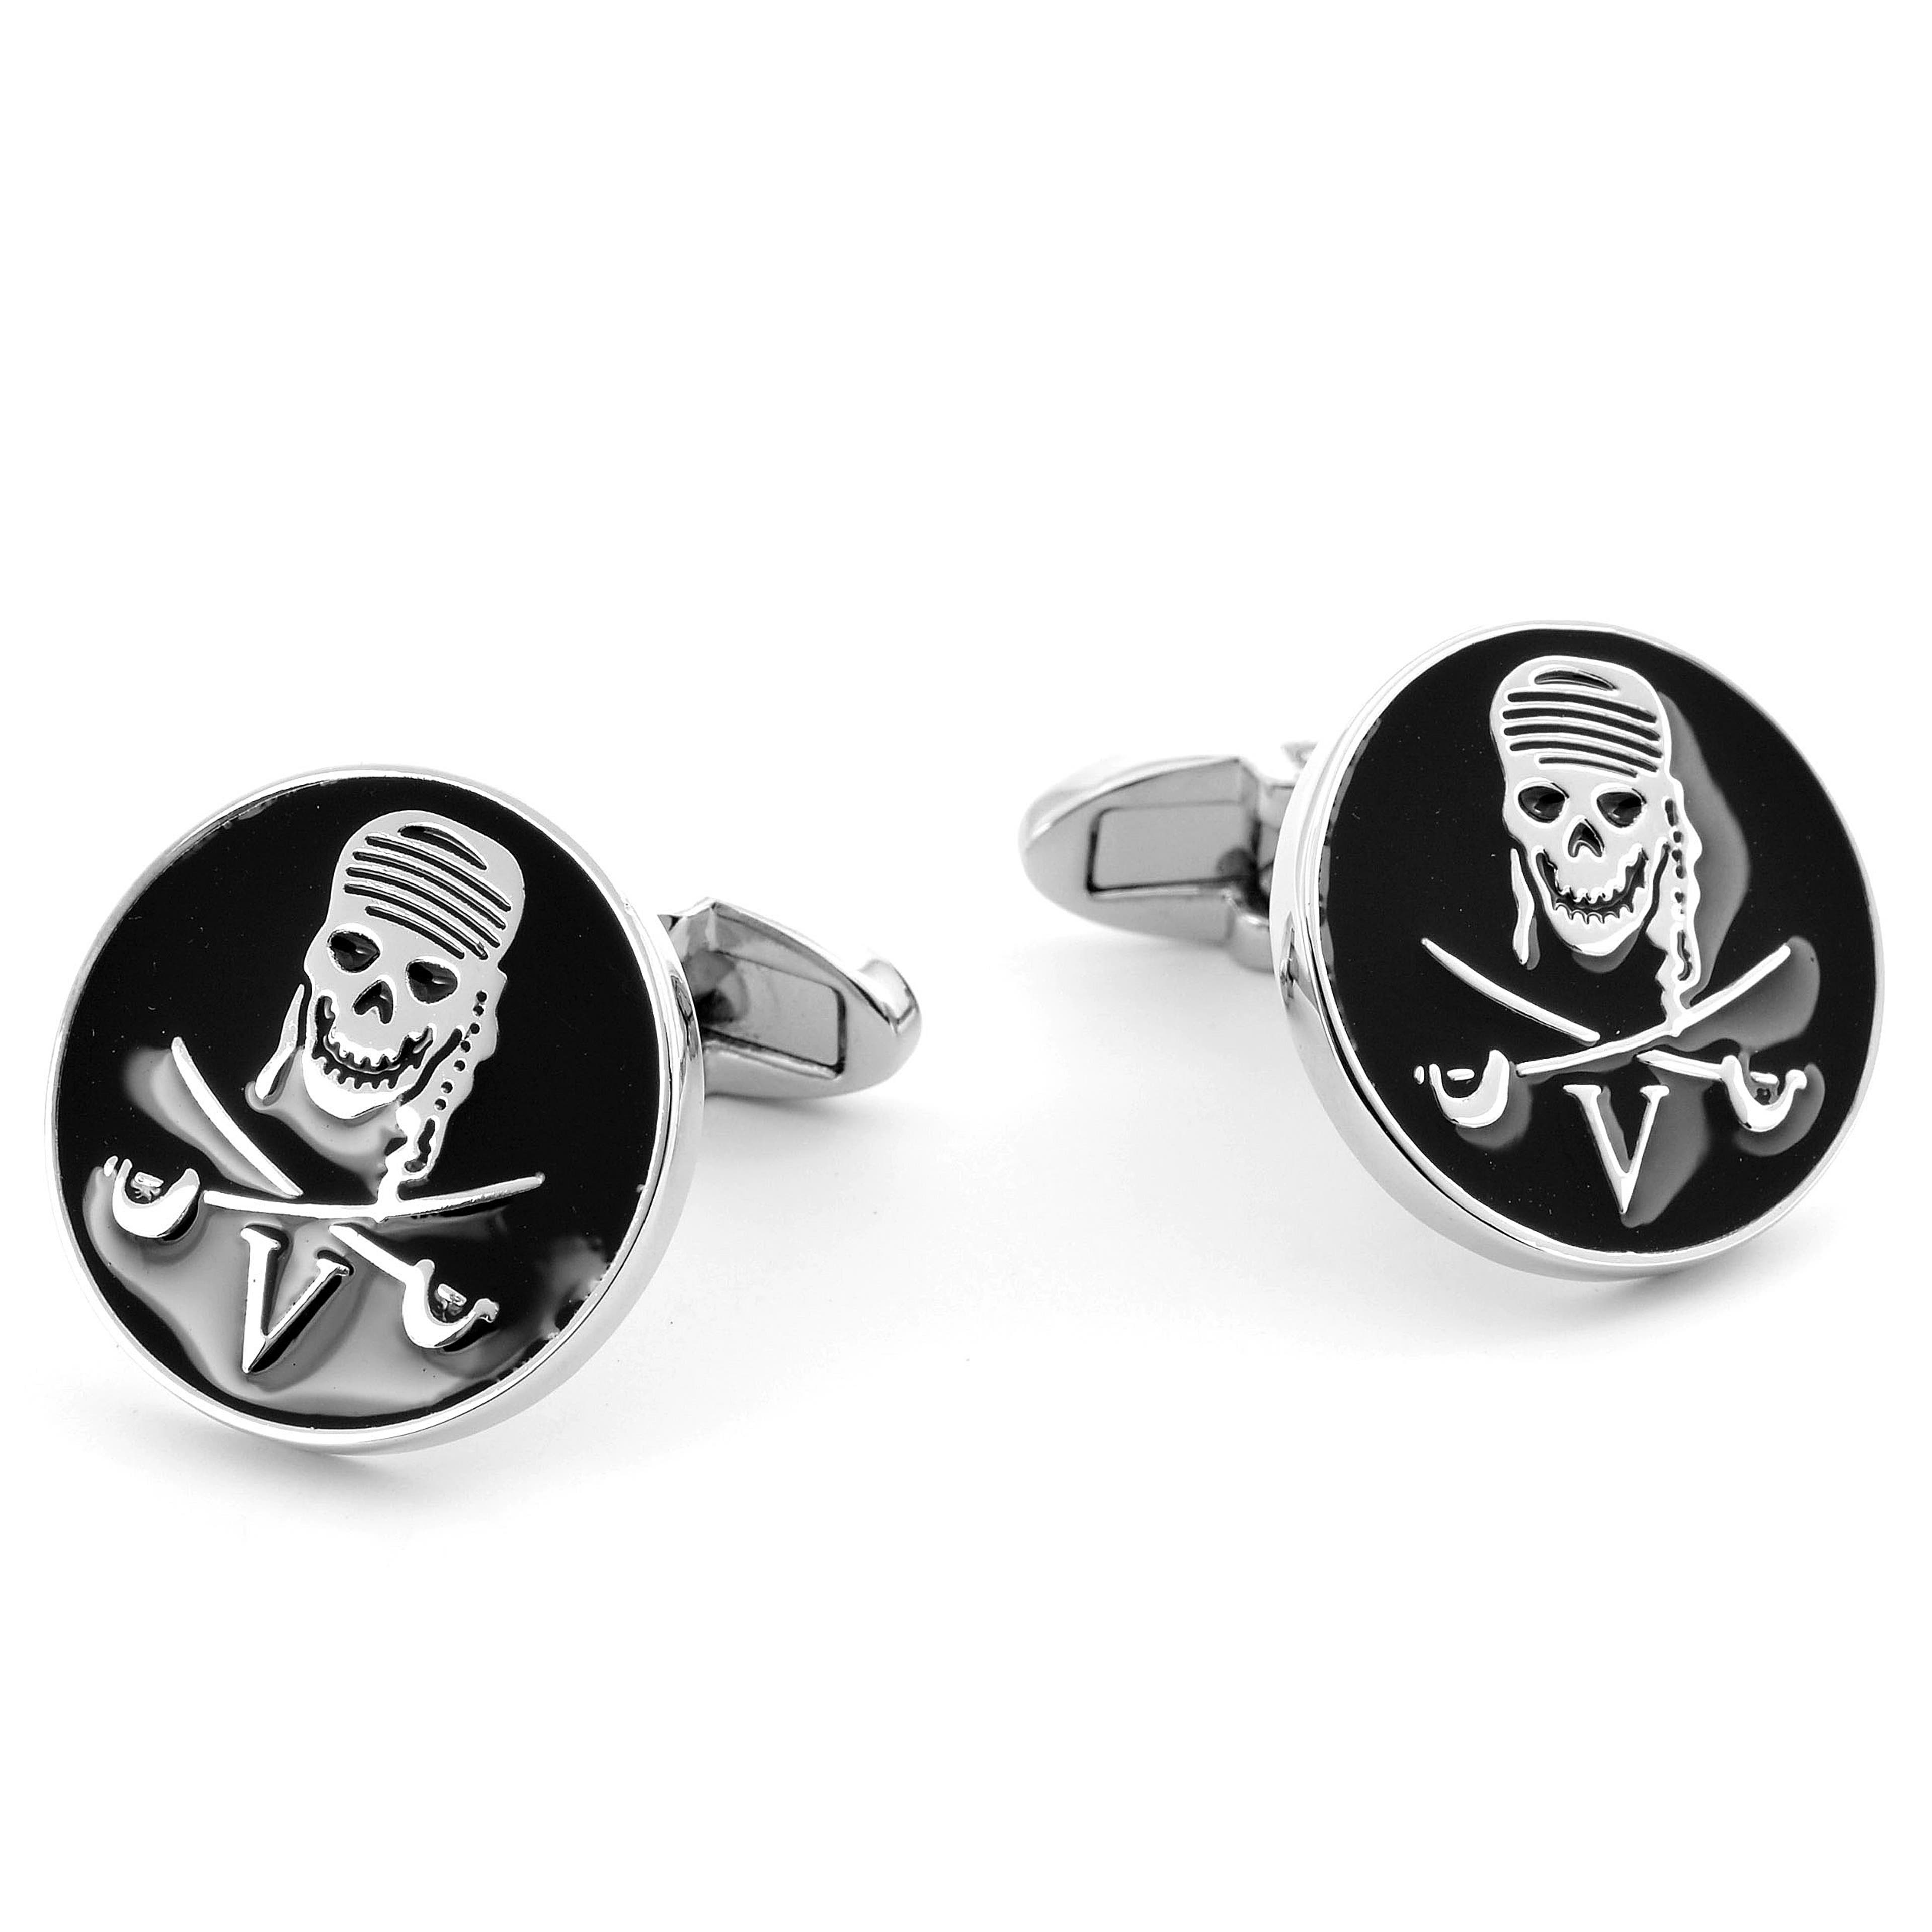 Round Black & Silver-Tone Pirate Cufflinks